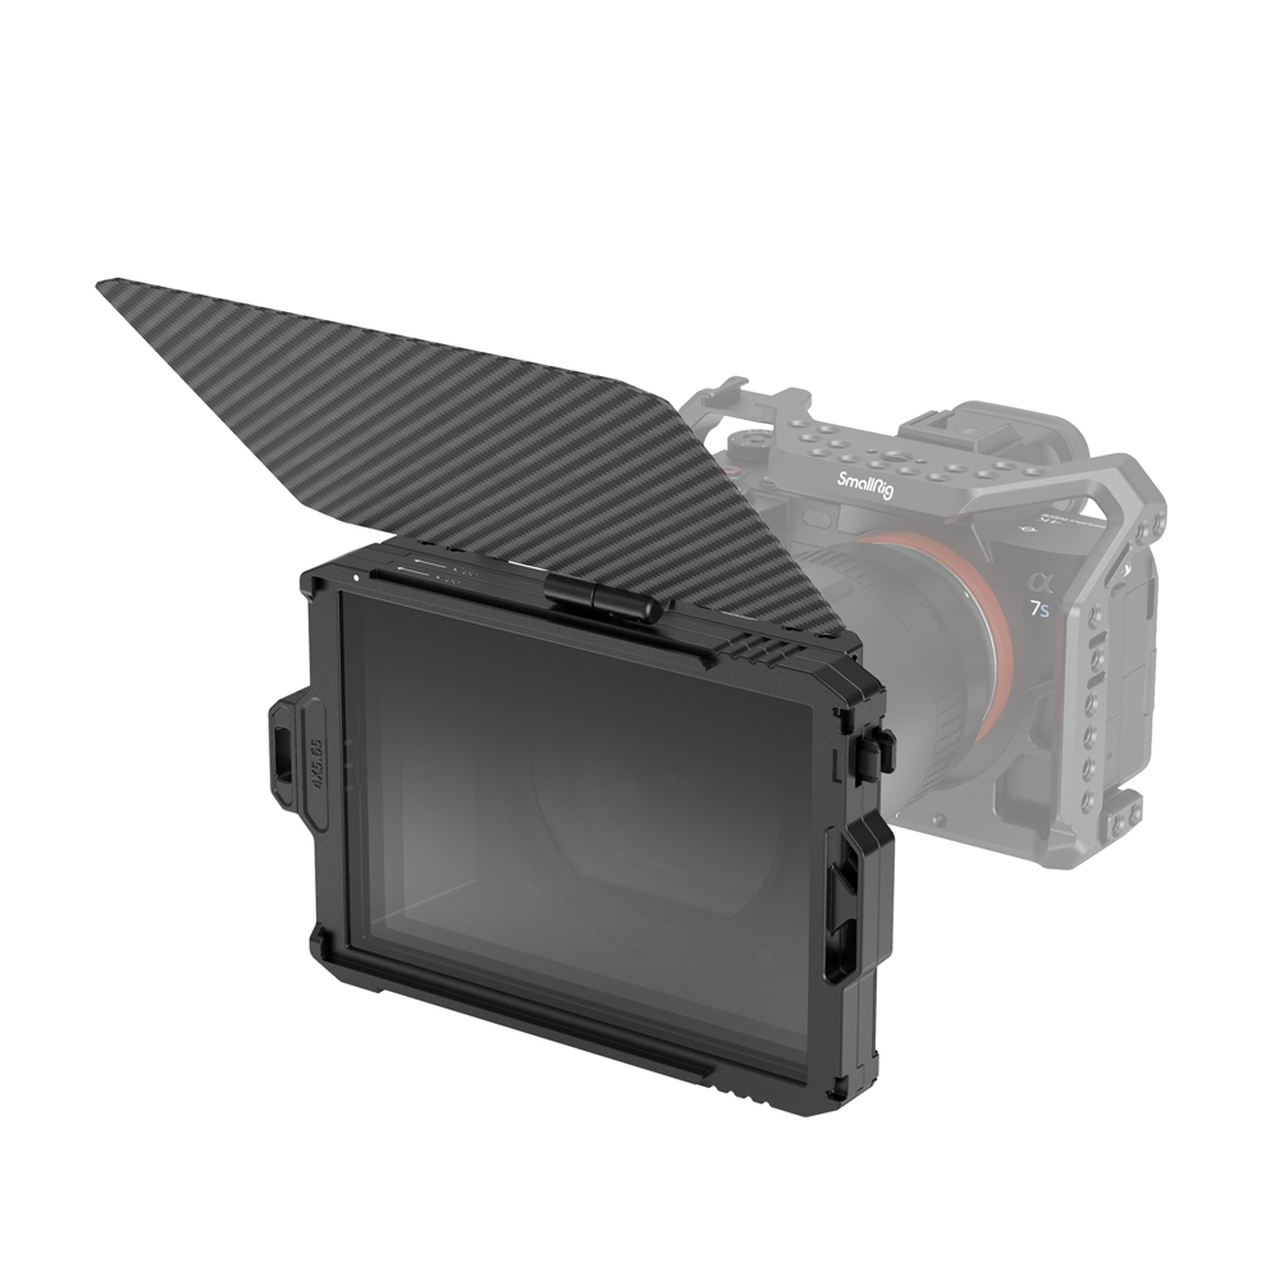 SmallRig Mini Matte Box 3196 แมทบ็อกซ์บังแสงหน้าเลนส์กล้อง ชุดริก ฟิลเตอร์ 4x5.65 ราคา 3190 บาท